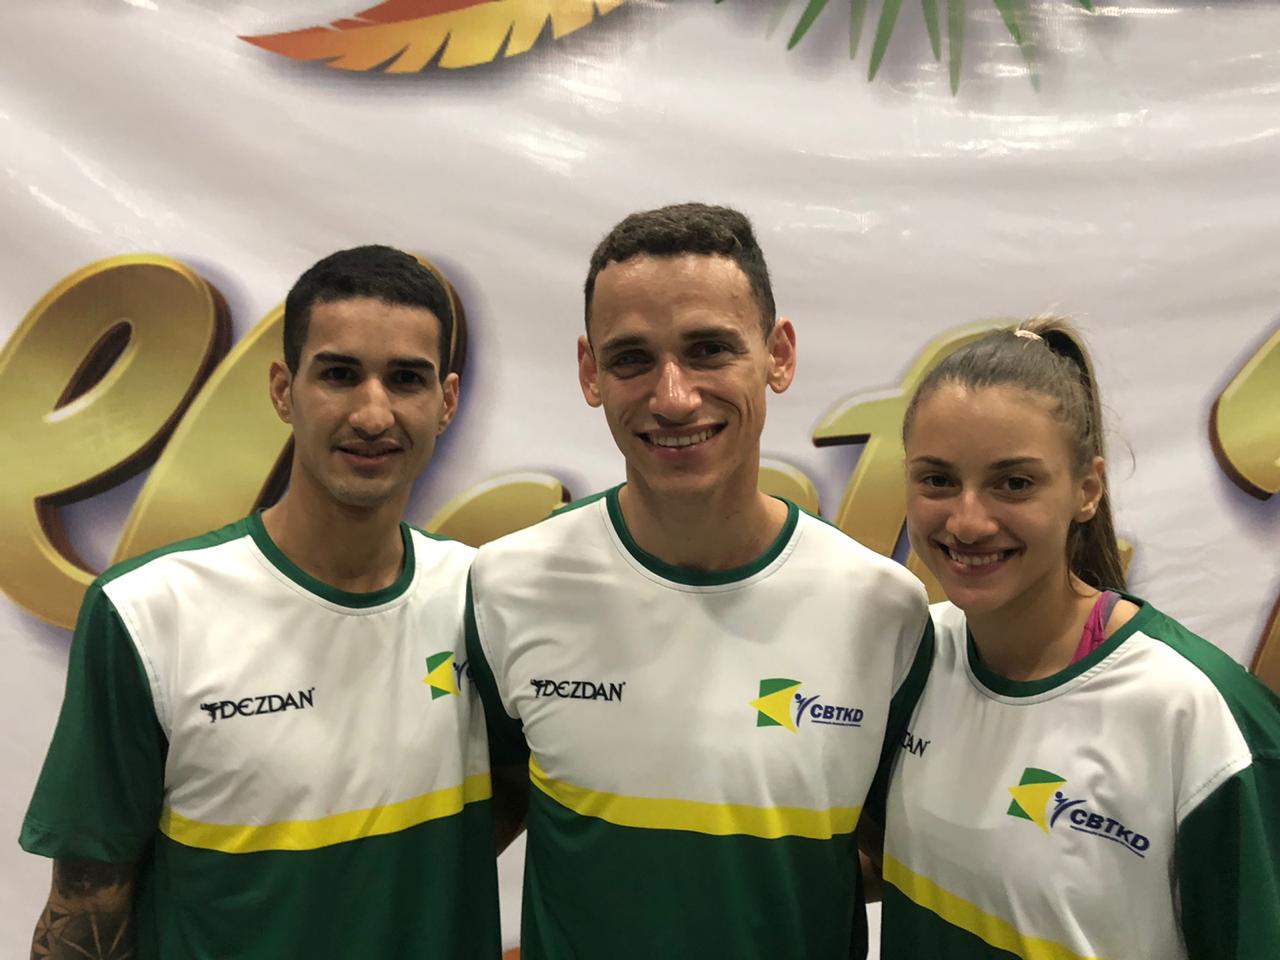 Seleção brasileira de Taekwondo garante três vagas nas Olimpíadas de Tóquio após qualificatória na Costa Rica